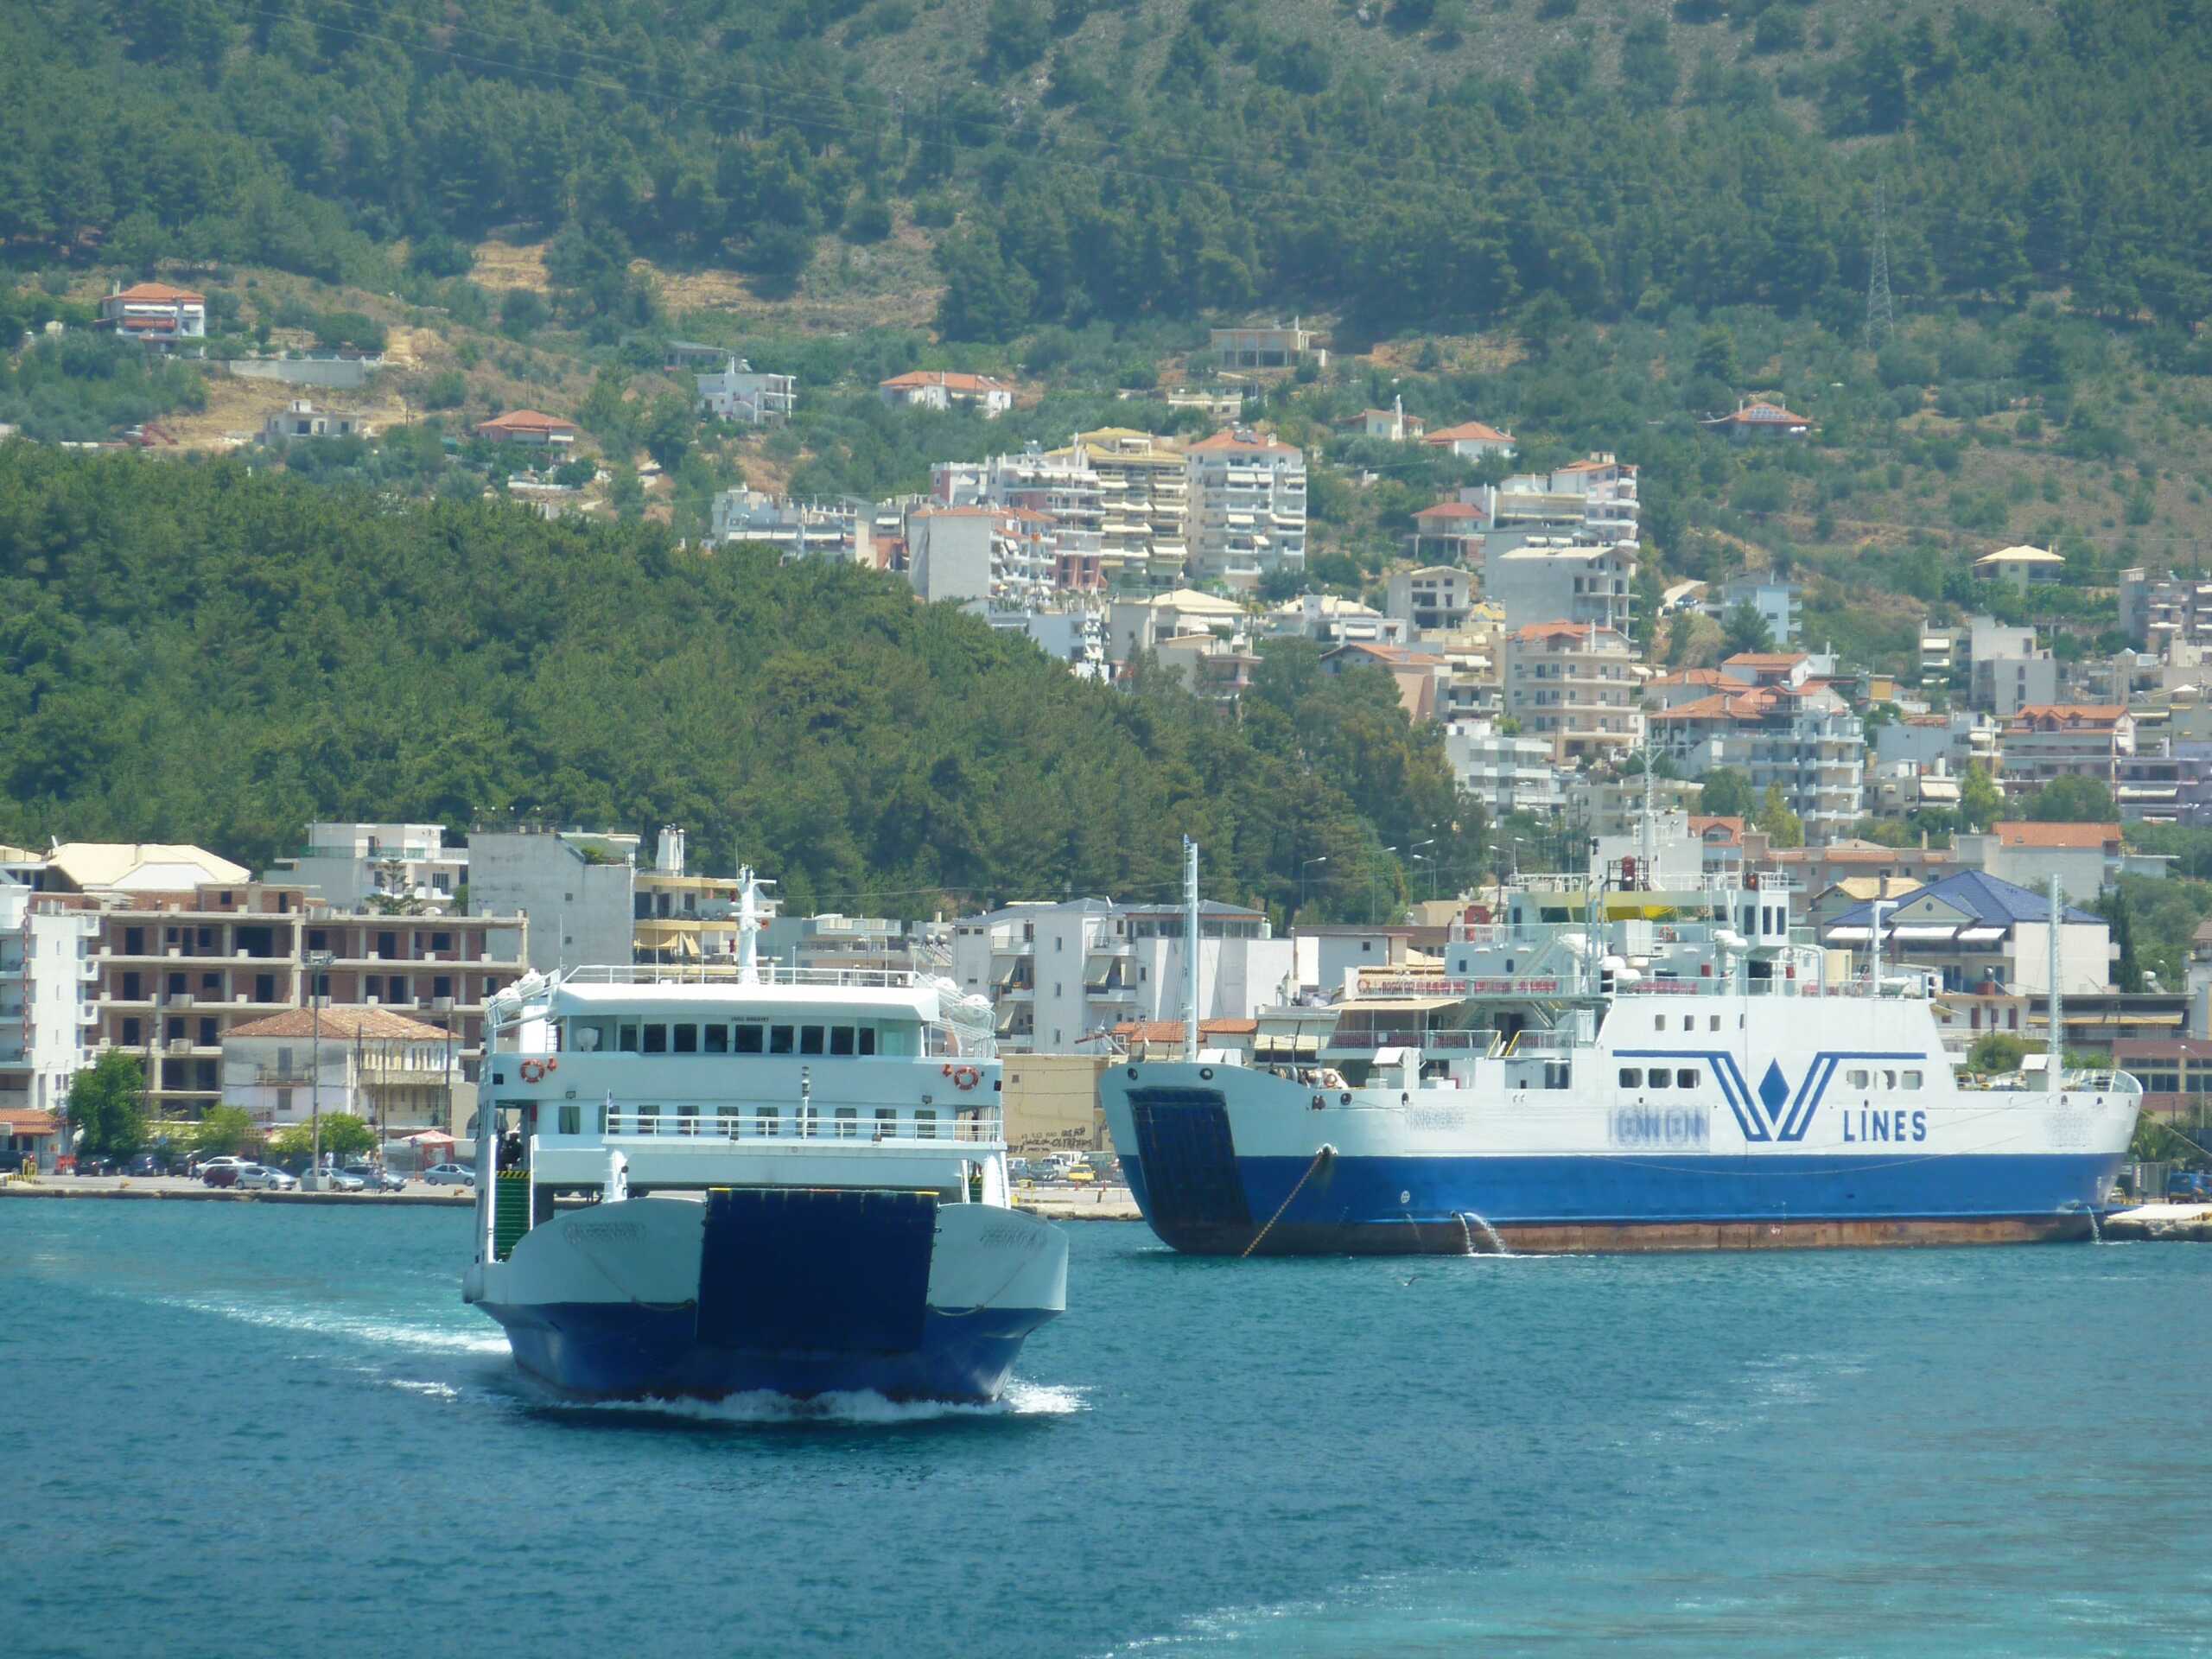 Καιρός: Κλειστό το πορθμείο Κέρκυρας – Ηγουμενίτσας για σκάφη ανοικτού τύπου